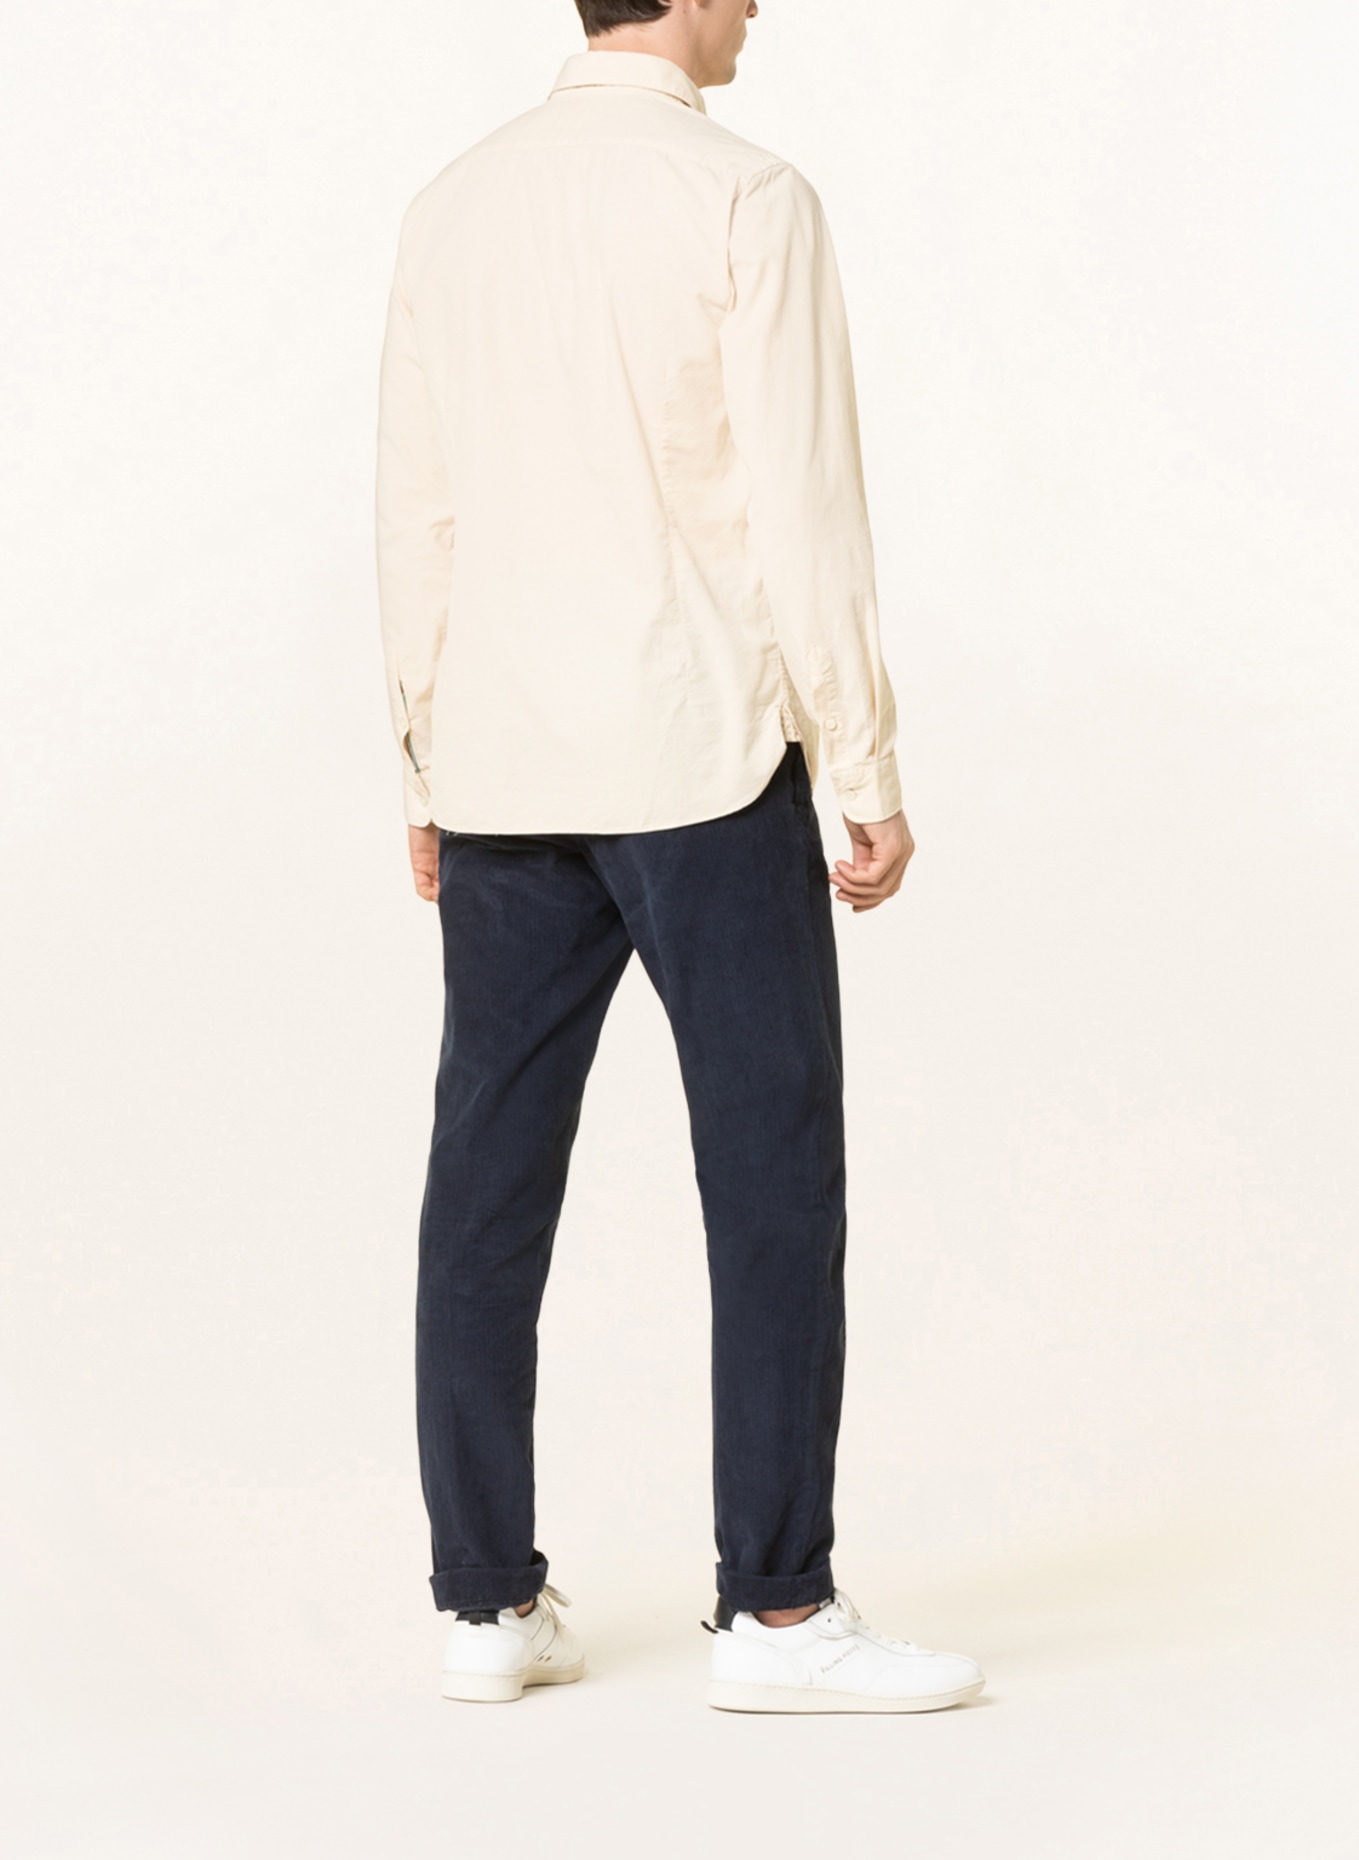 FIL NOIR Corduroy shirt BERGAMO shaped fit , Color: ECRU (Image 3)